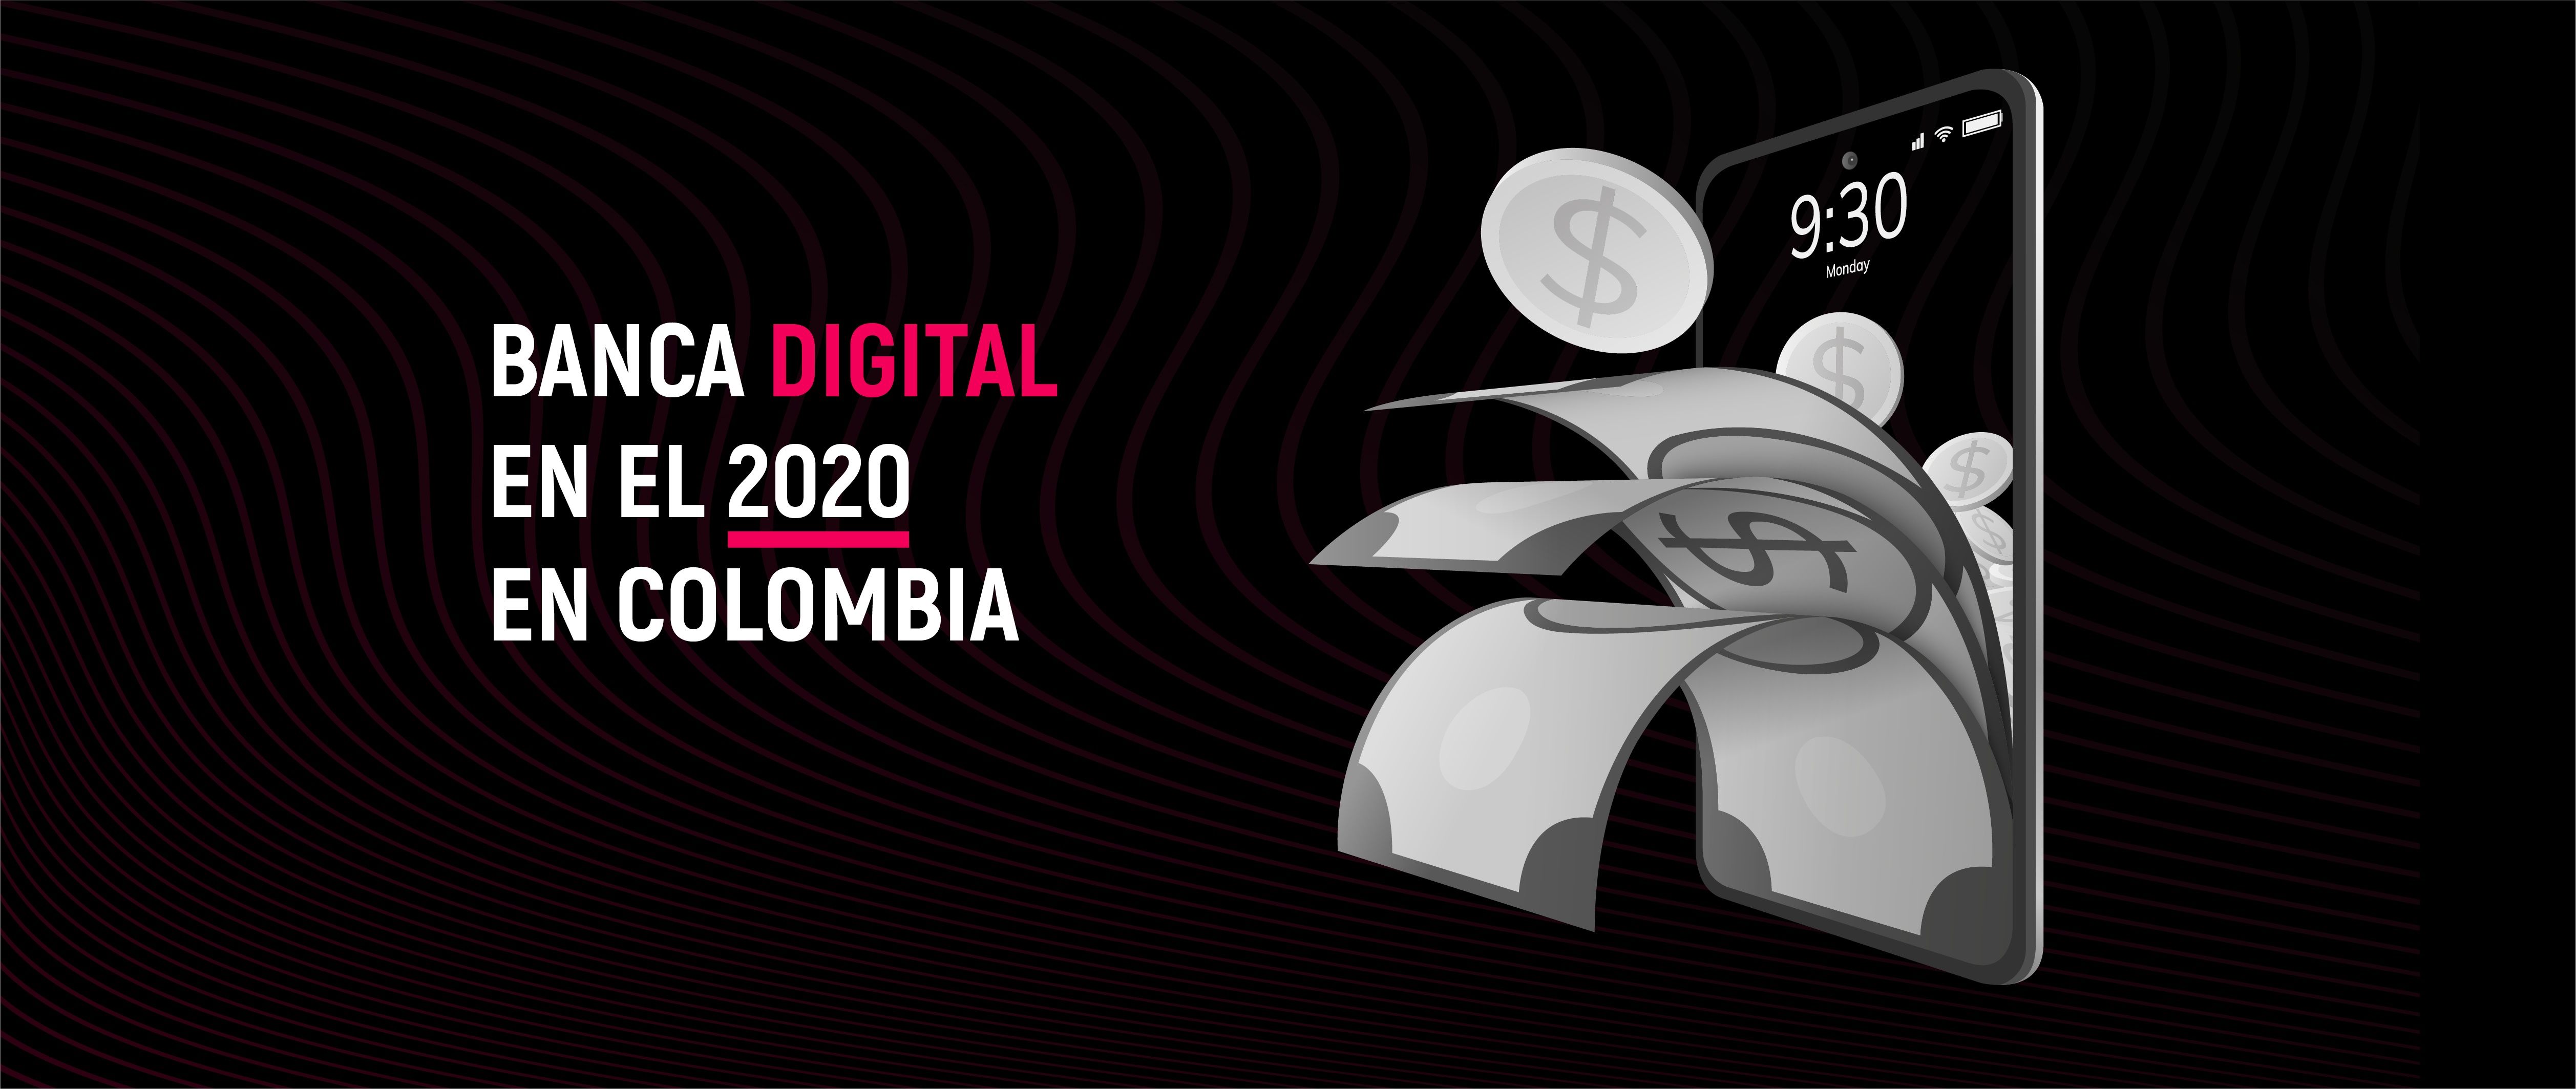 Banca digital al cierre de 2020 en Colombia